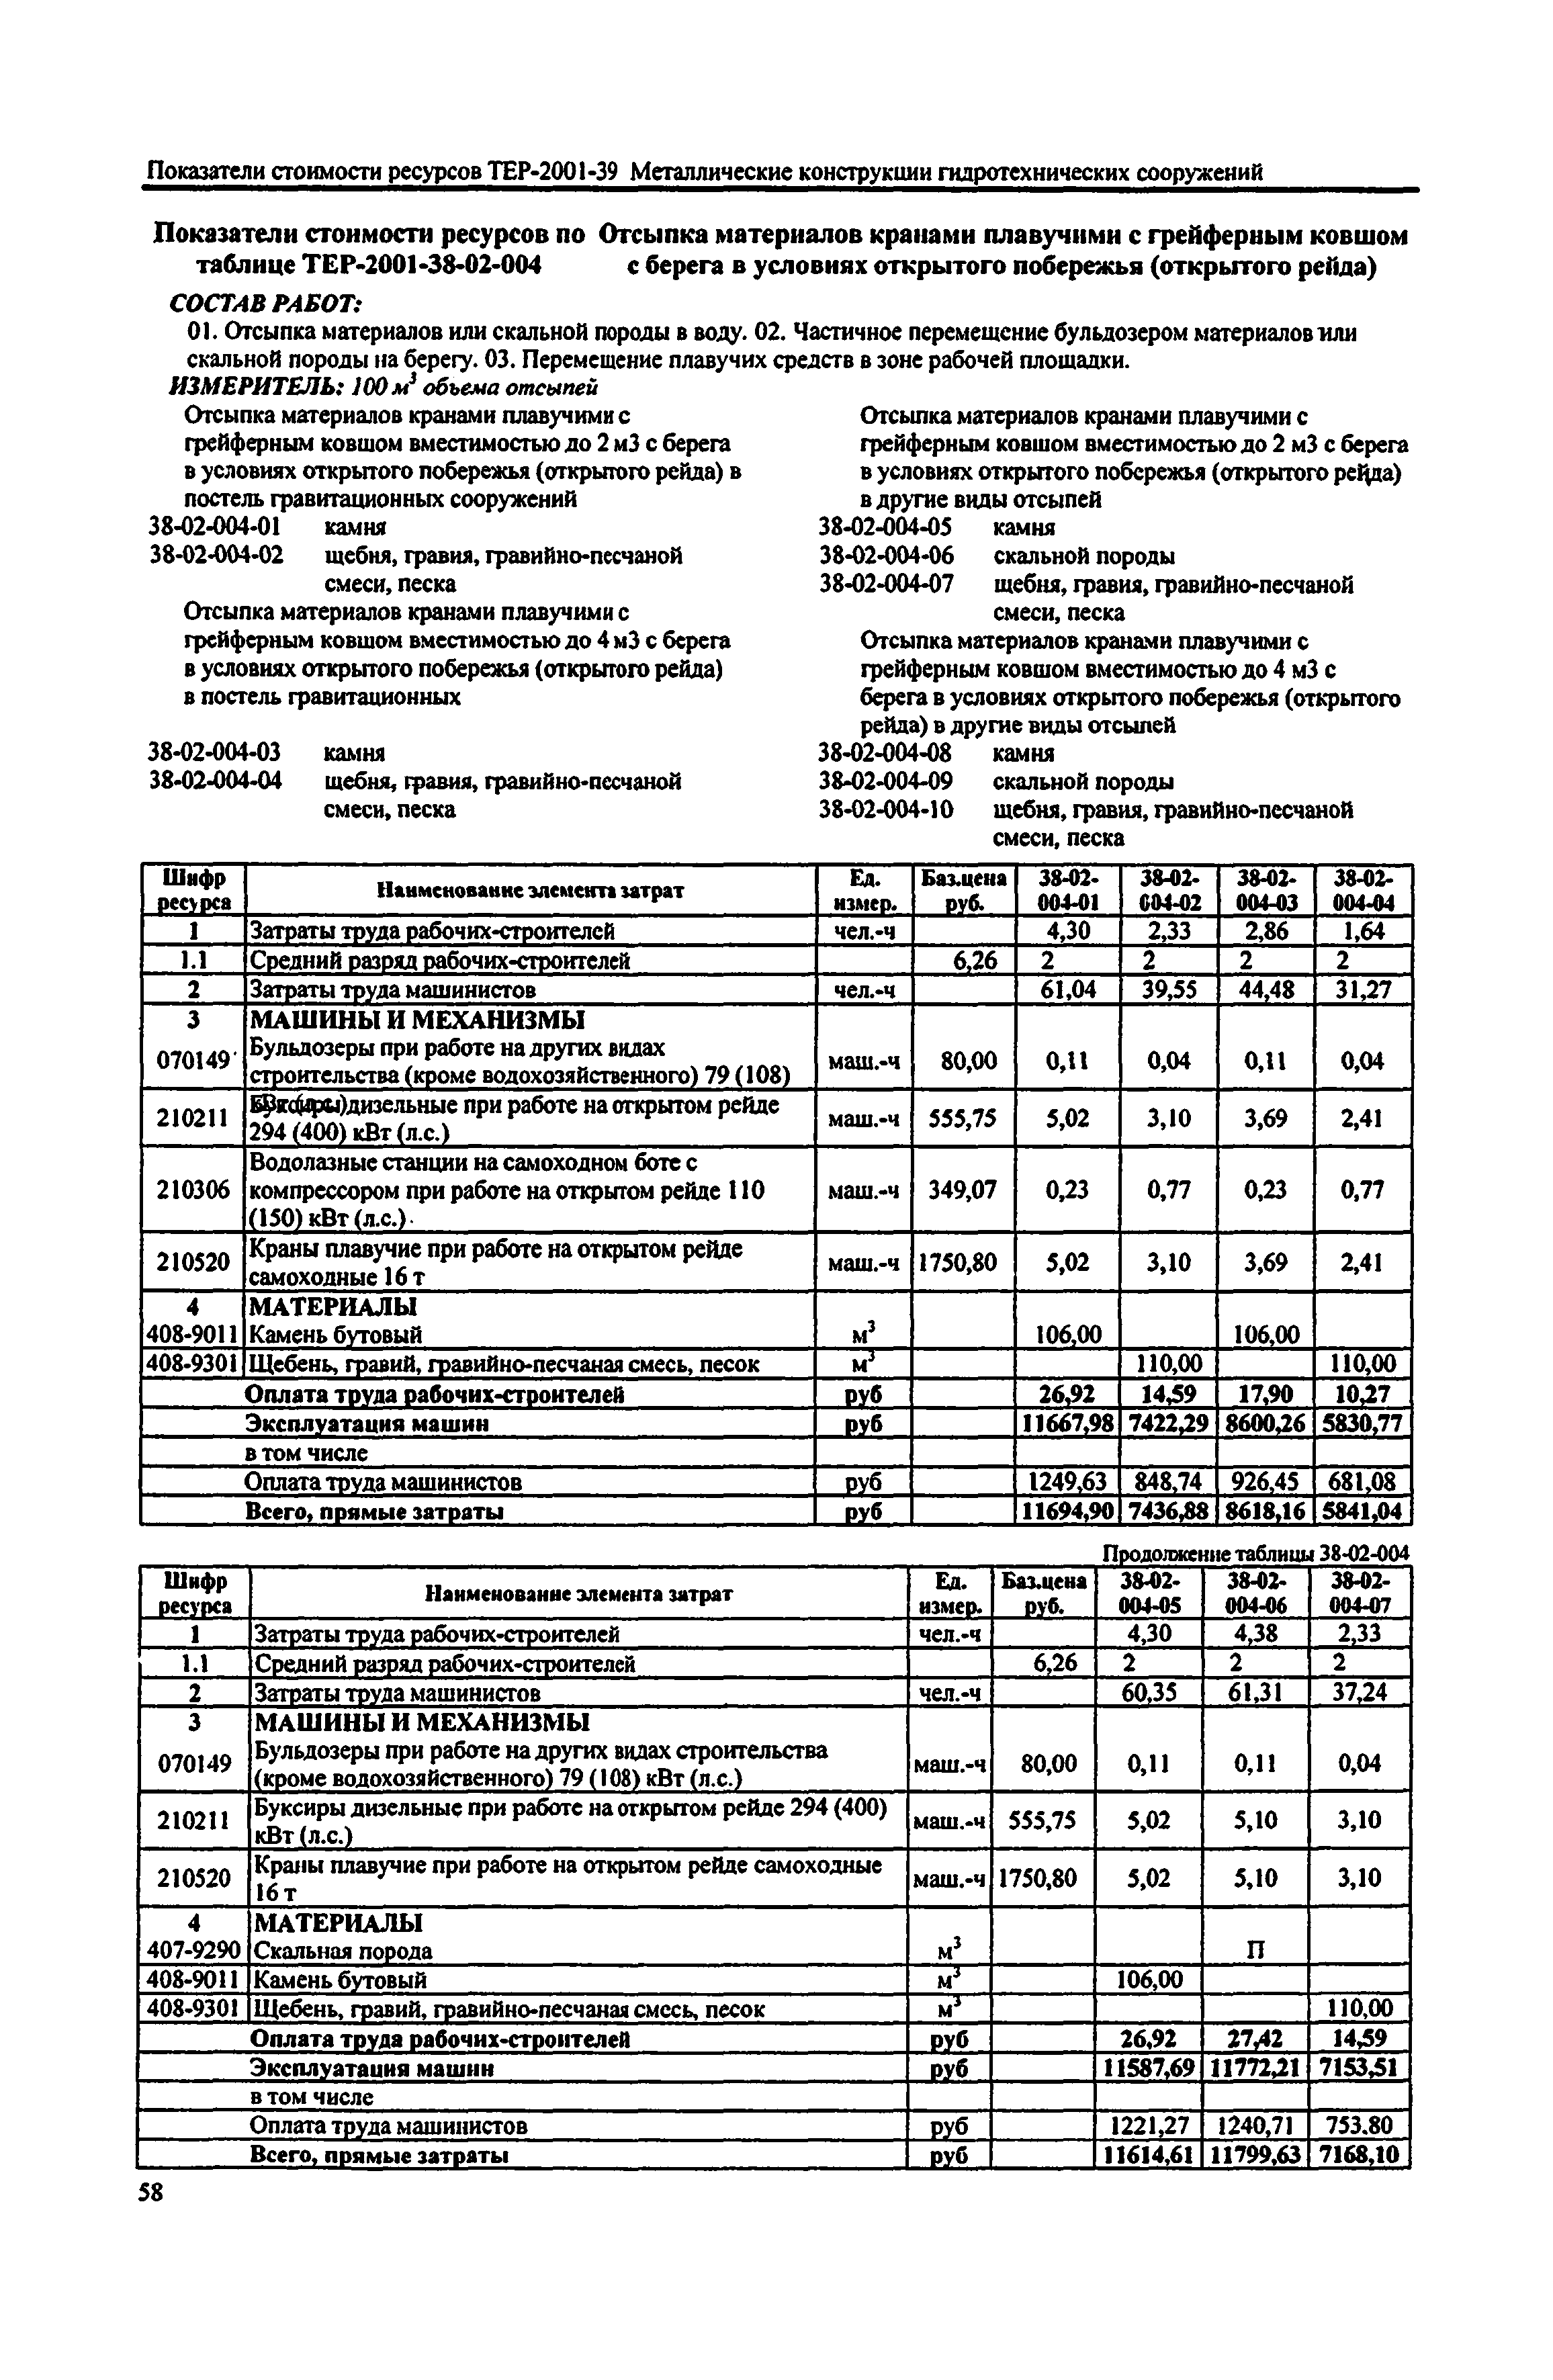 Справочное пособие к ТЕР 81-02-38-2001